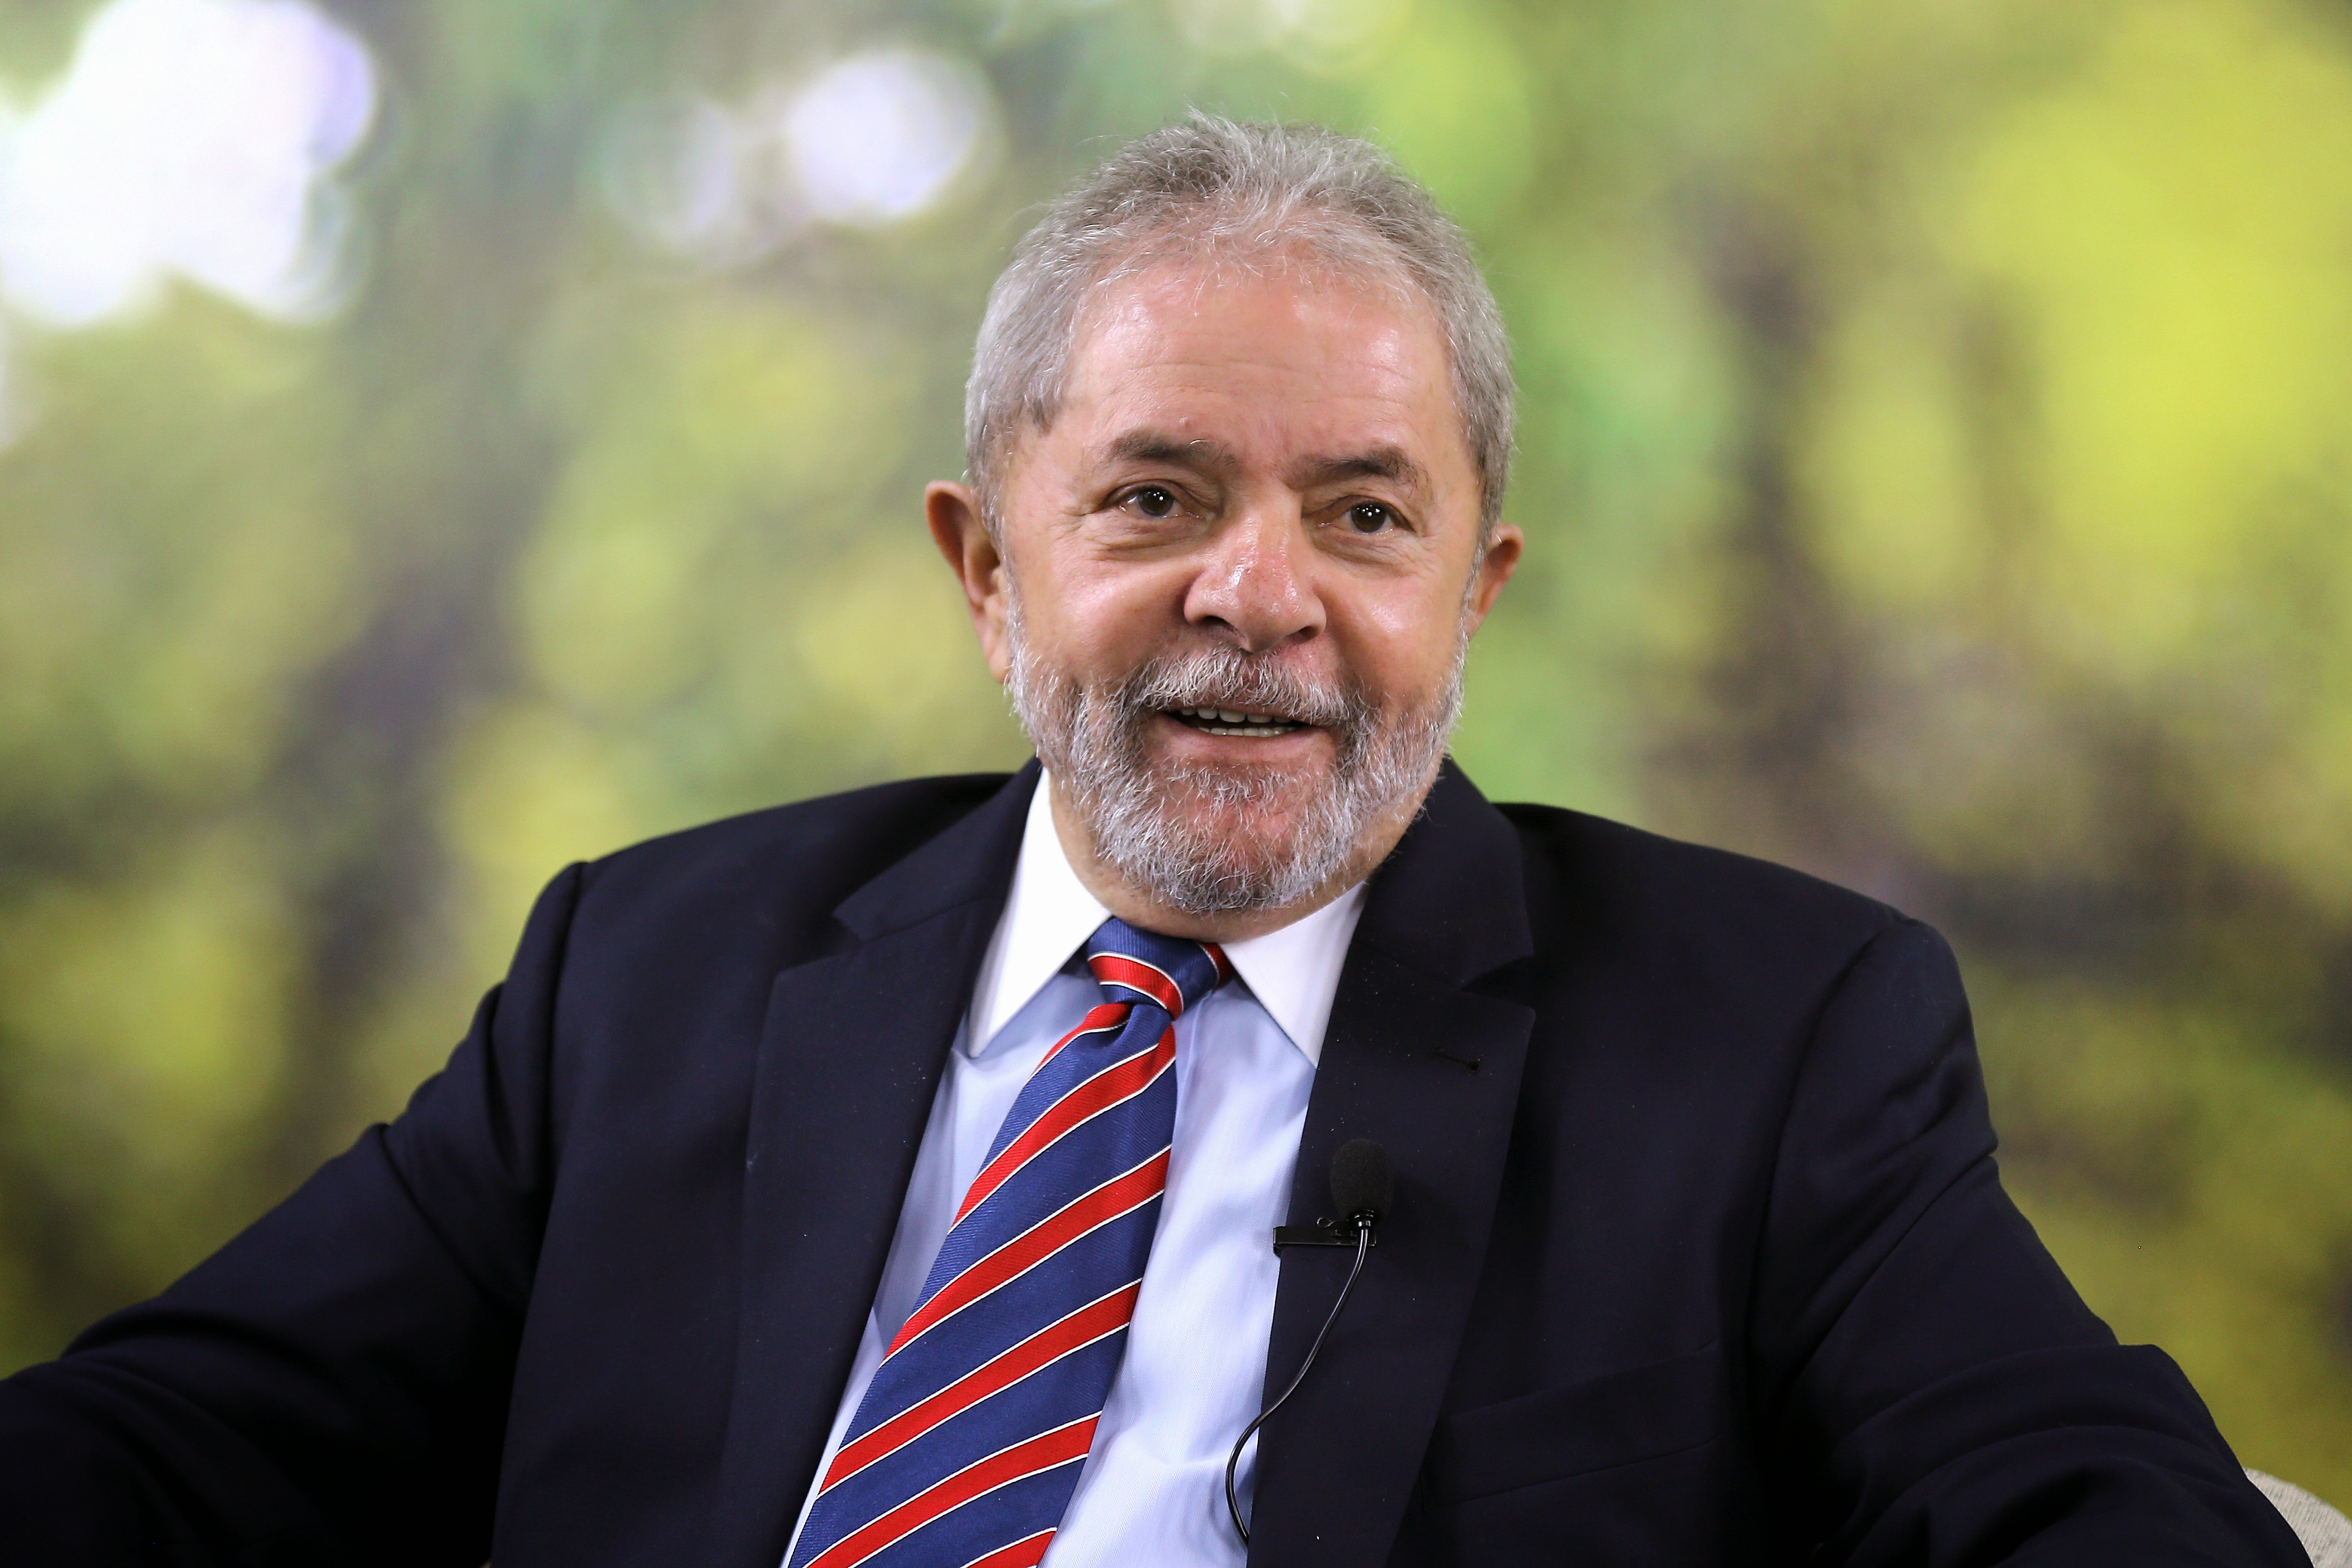  Em depoimento, ex-presidente Lula critica modo como MPF conduz investigações da Lava Jato